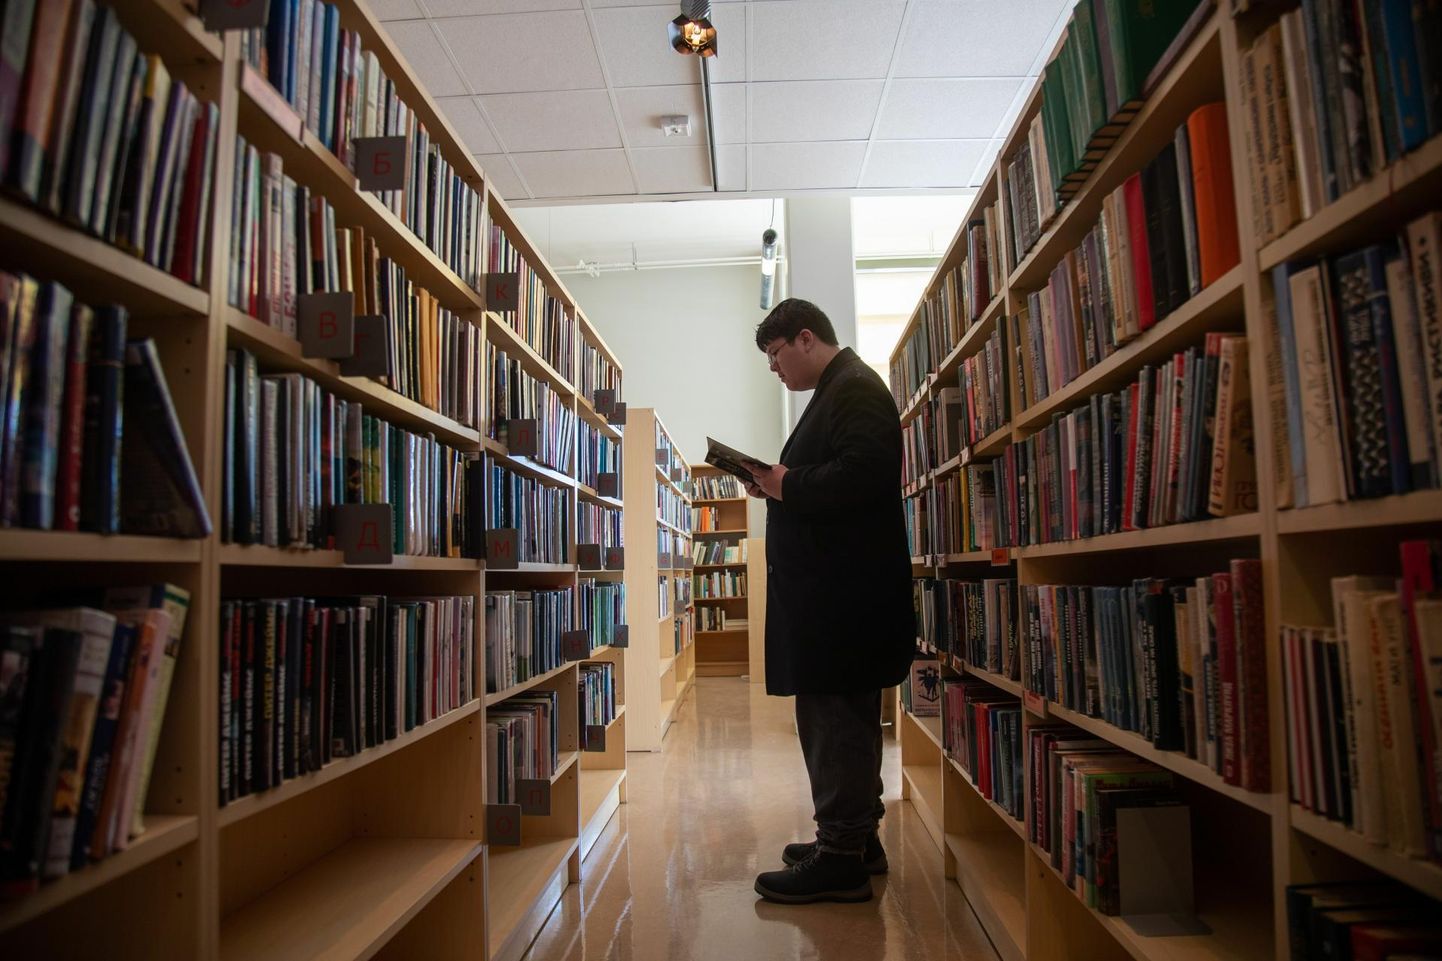 Igal aastal antakse Eestis välja tuhandeid raamatuid ning vanad raamatud peavad neile riiulitel ruumi tegema.